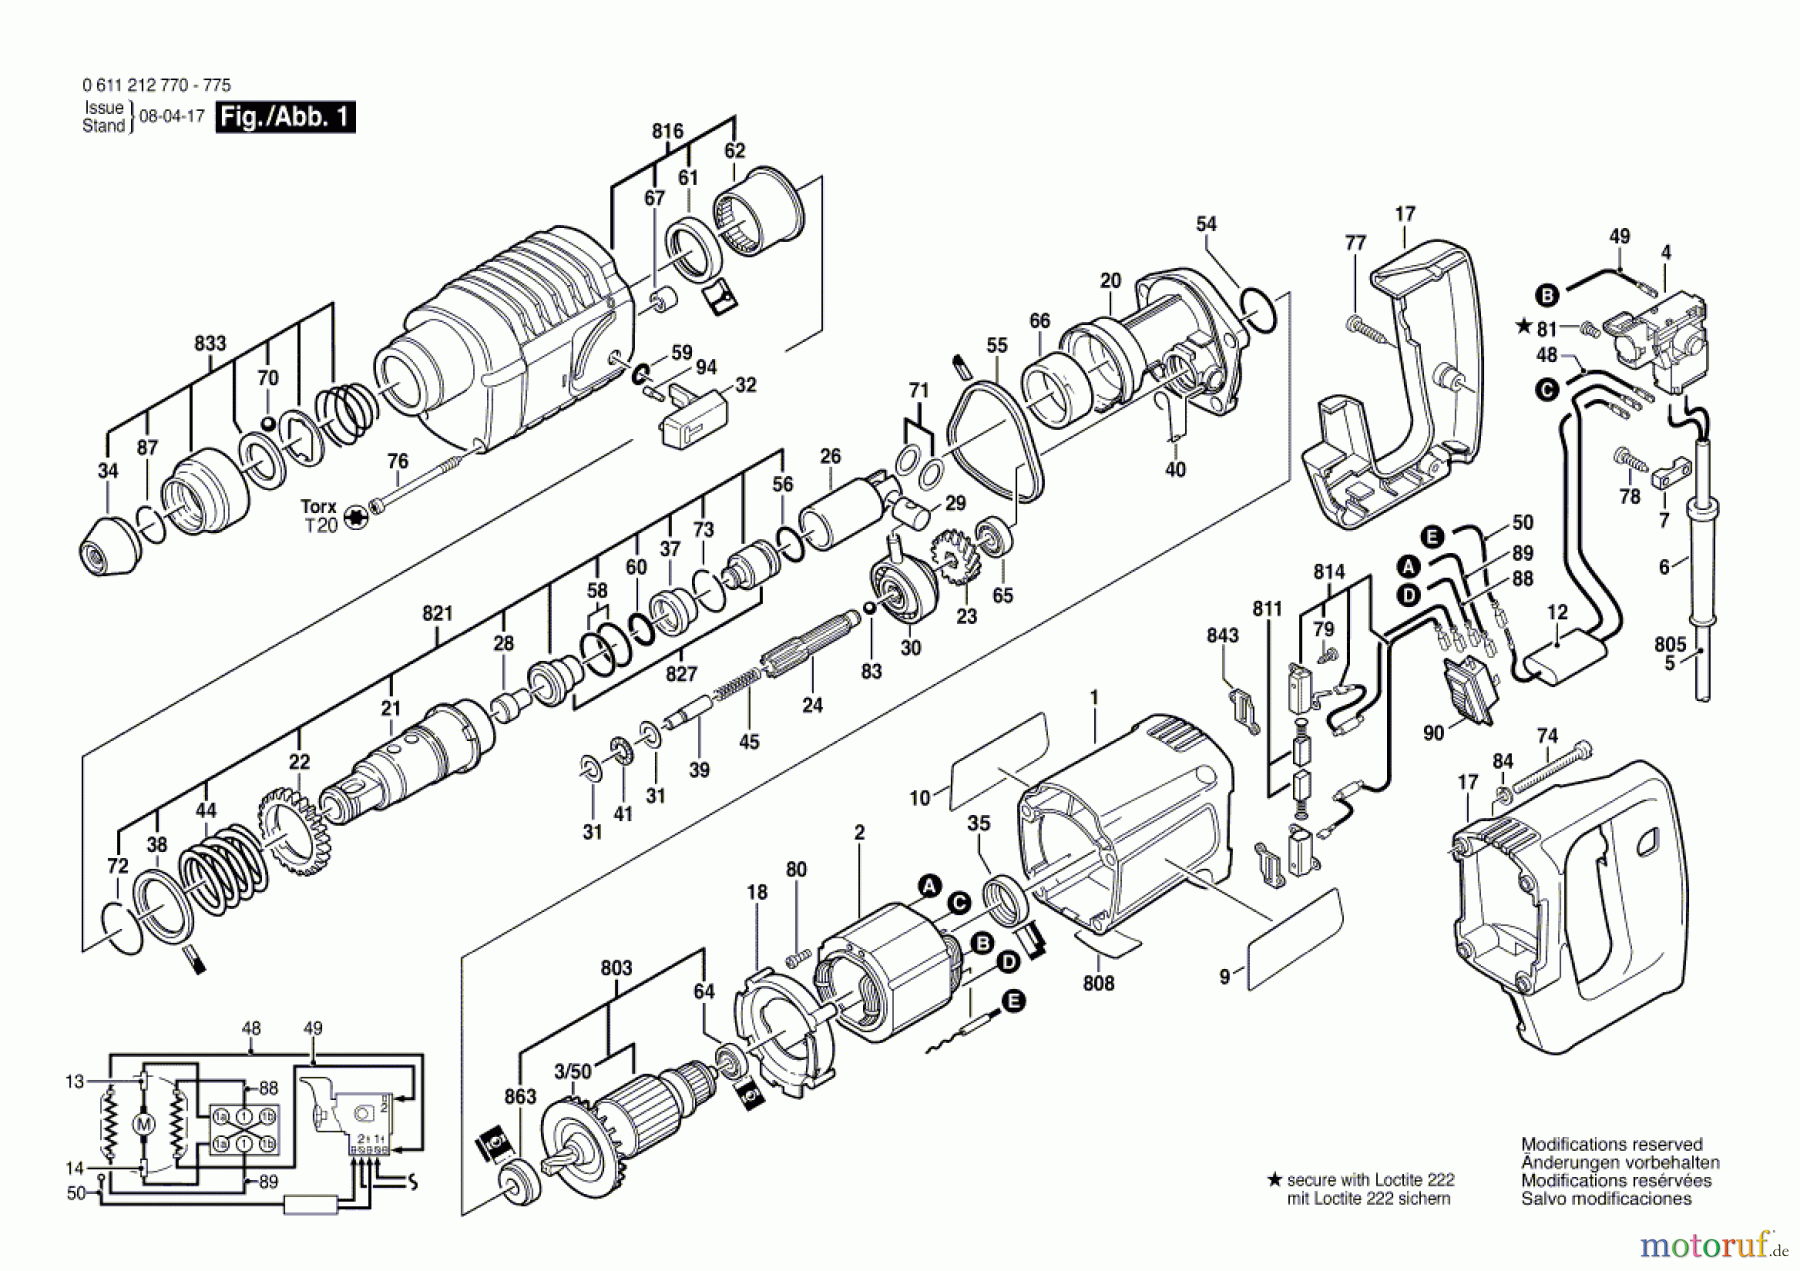  Bosch Werkzeug Bohrhammer 325 Seite 1